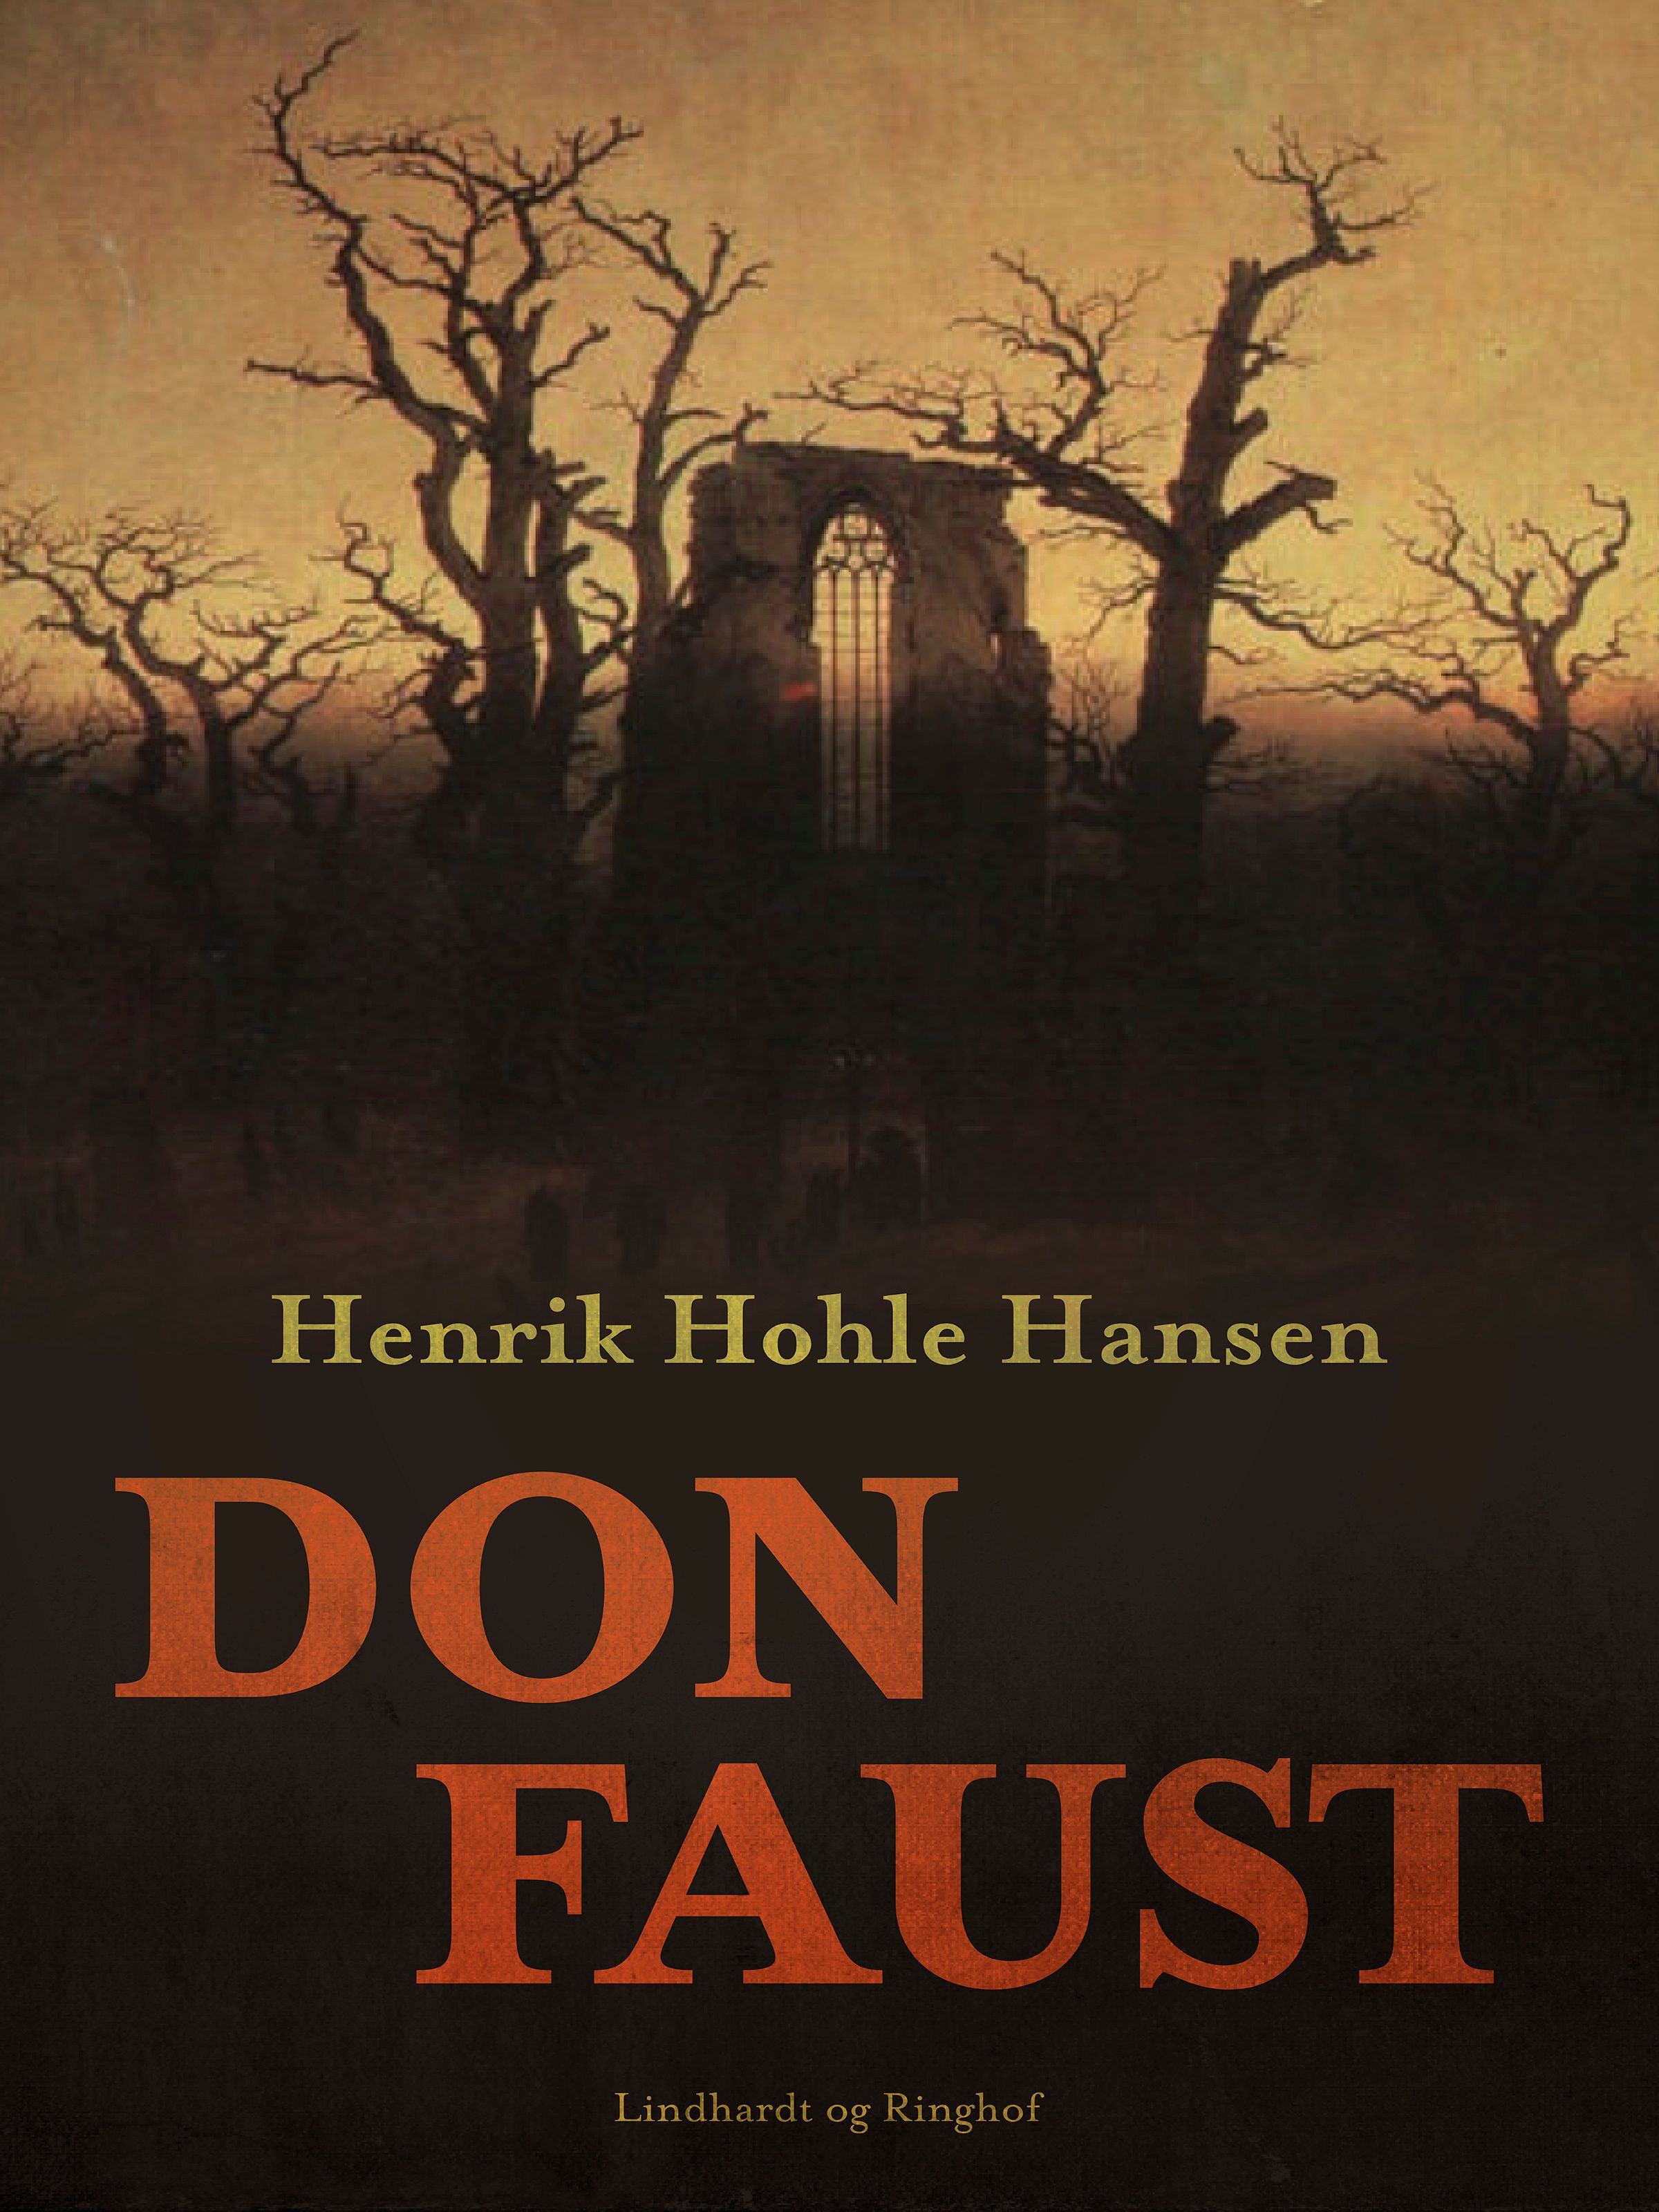 Don Faust, ljudbok av Henrik Hohle Hansen